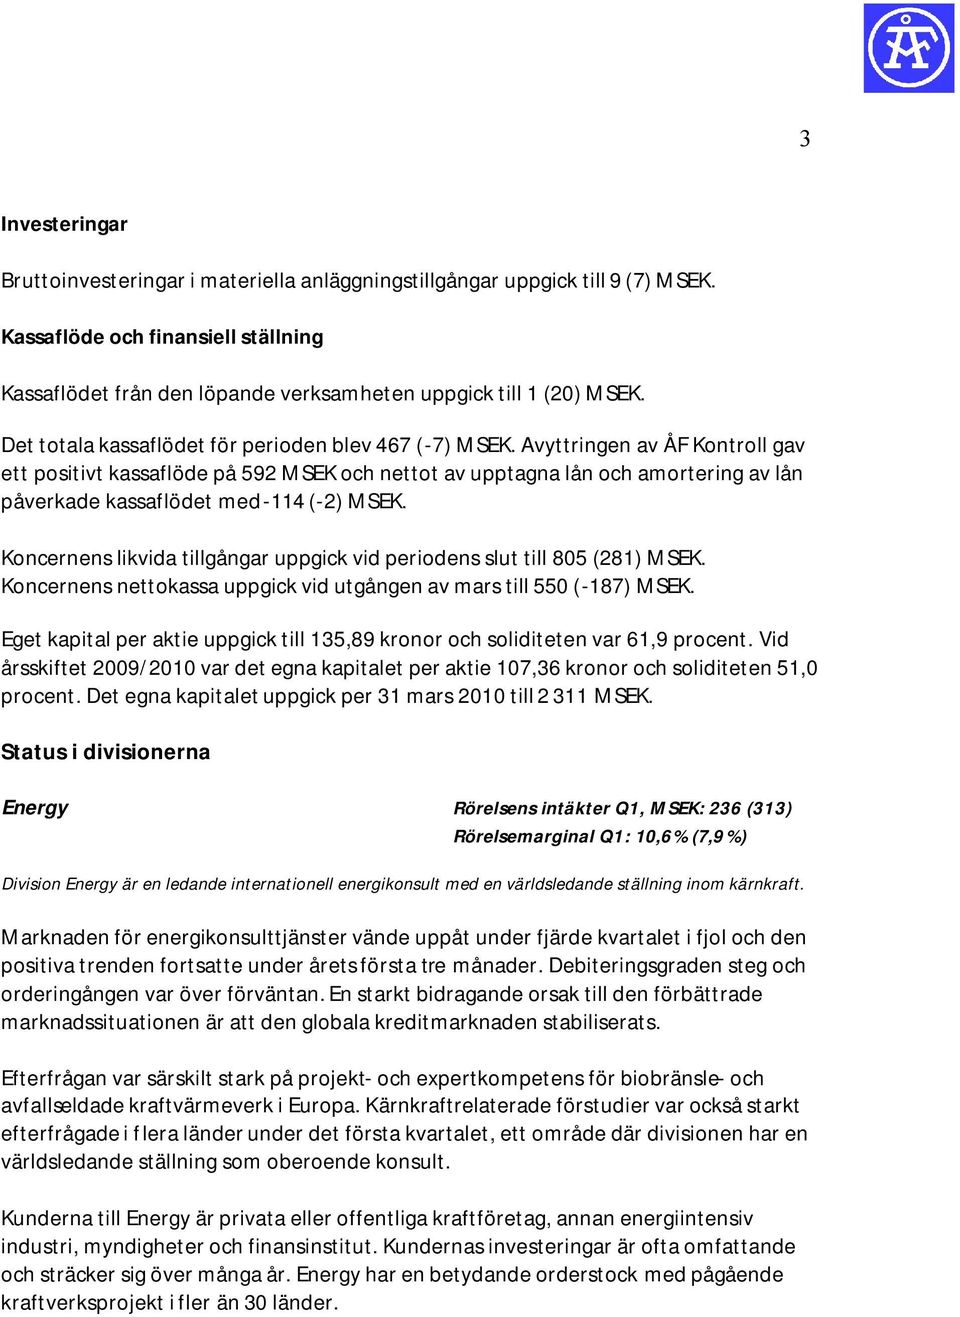 Avyttringen av ÅF Kontroll gav ett positivt kassaflöde på 592 MSEK och nettot av upptagna lån och amortering av lån påverkade kassaflödet med -114 (-2) MSEK.